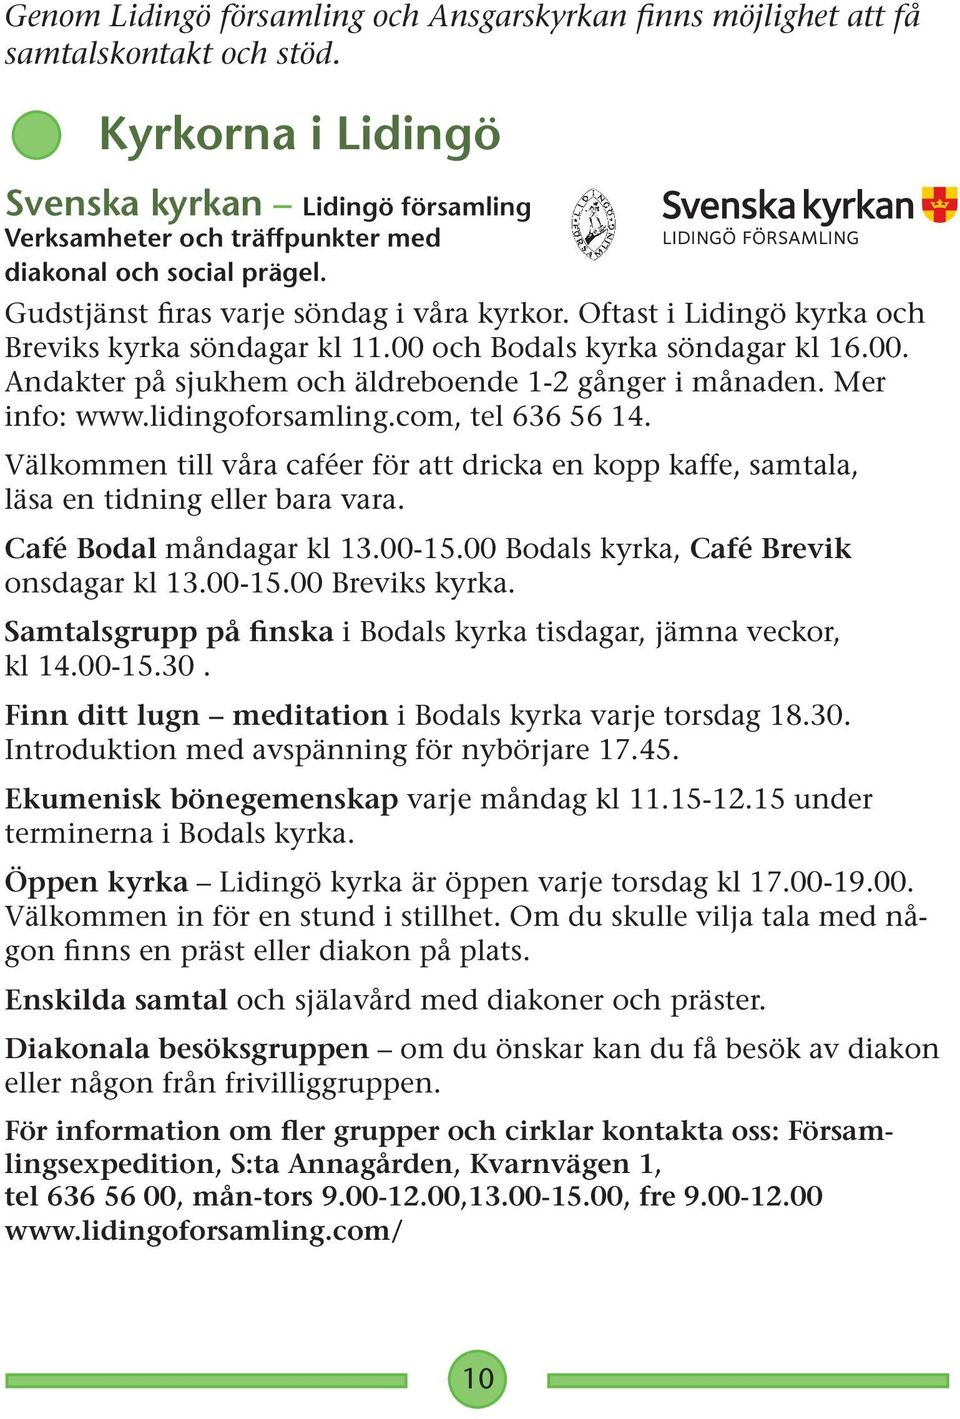 Oftast i Lidingö kyrka och Breviks kyrka söndagar kl 11.00 och Bodals kyrka söndagar kl 16.00. Andakter på sjukhem och äldreboende 1-2 gånger i månaden. Mer info: www.lidingoforsamling.